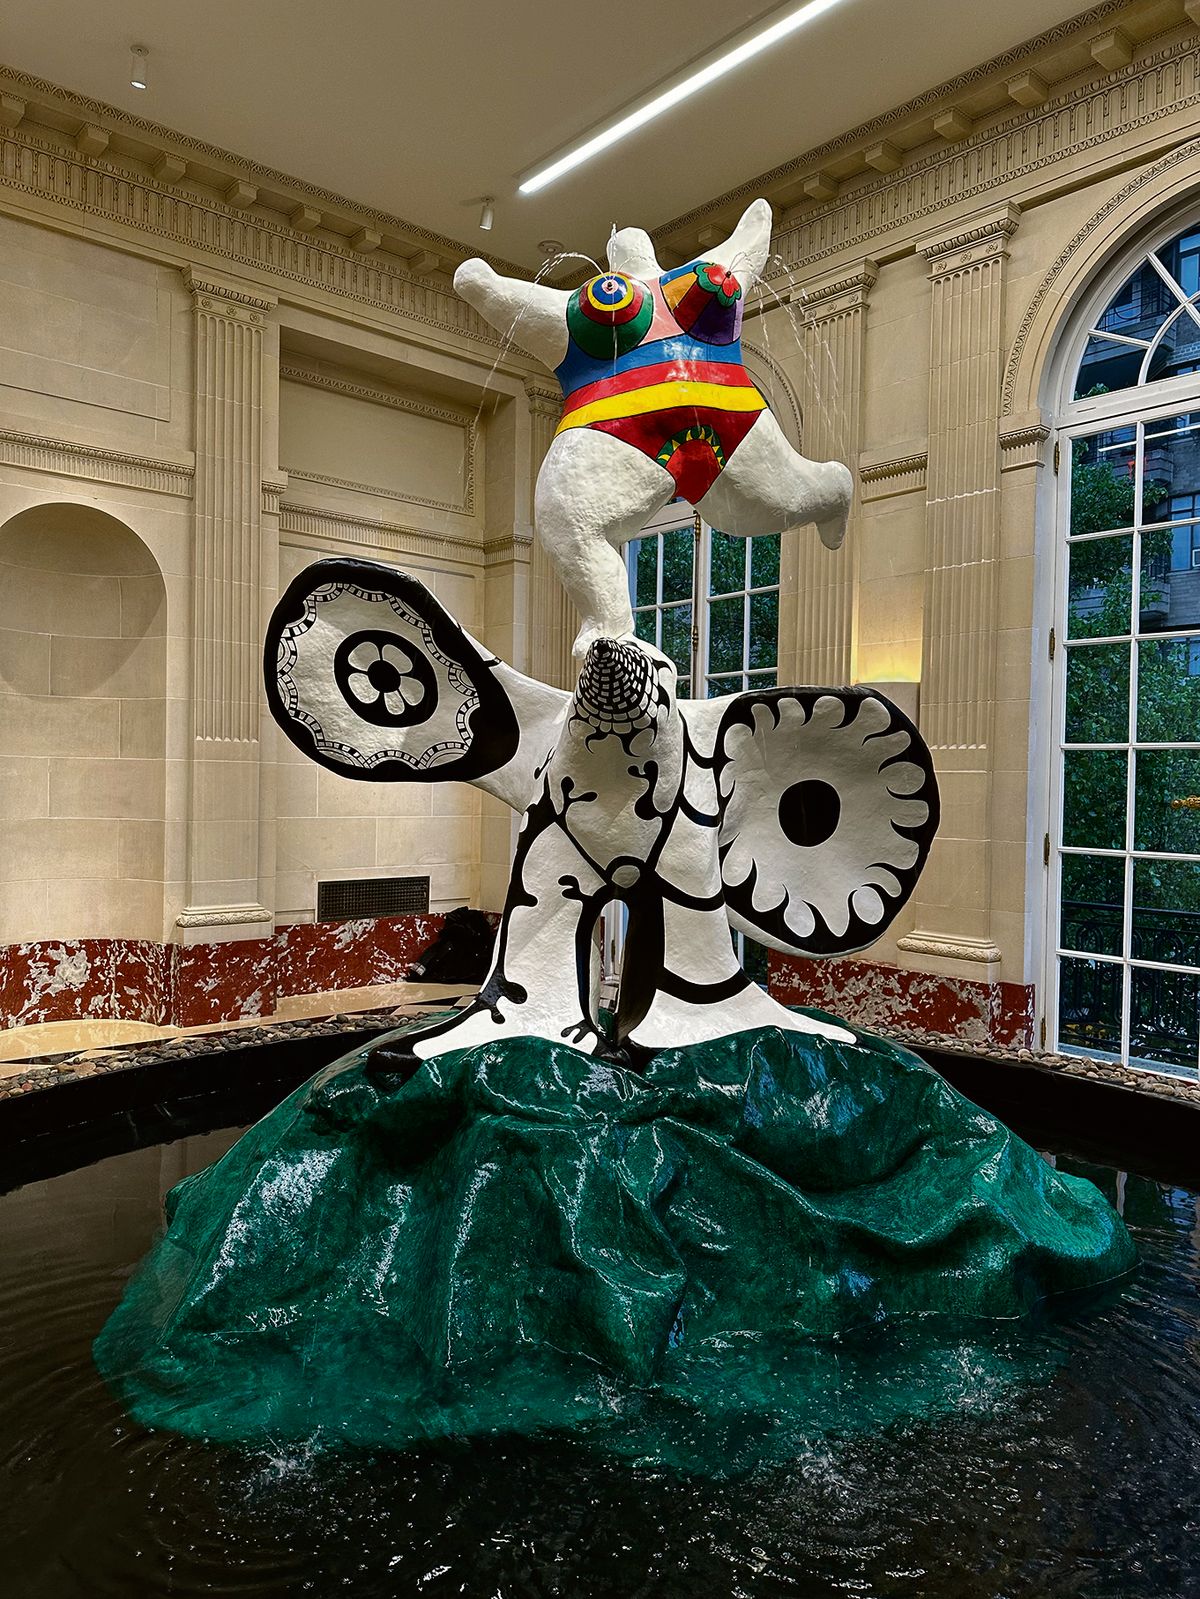 Niki de Saint Phalle’s La femme et l’oiseau fontaine at Salon 94 gallery

Gareth Harris